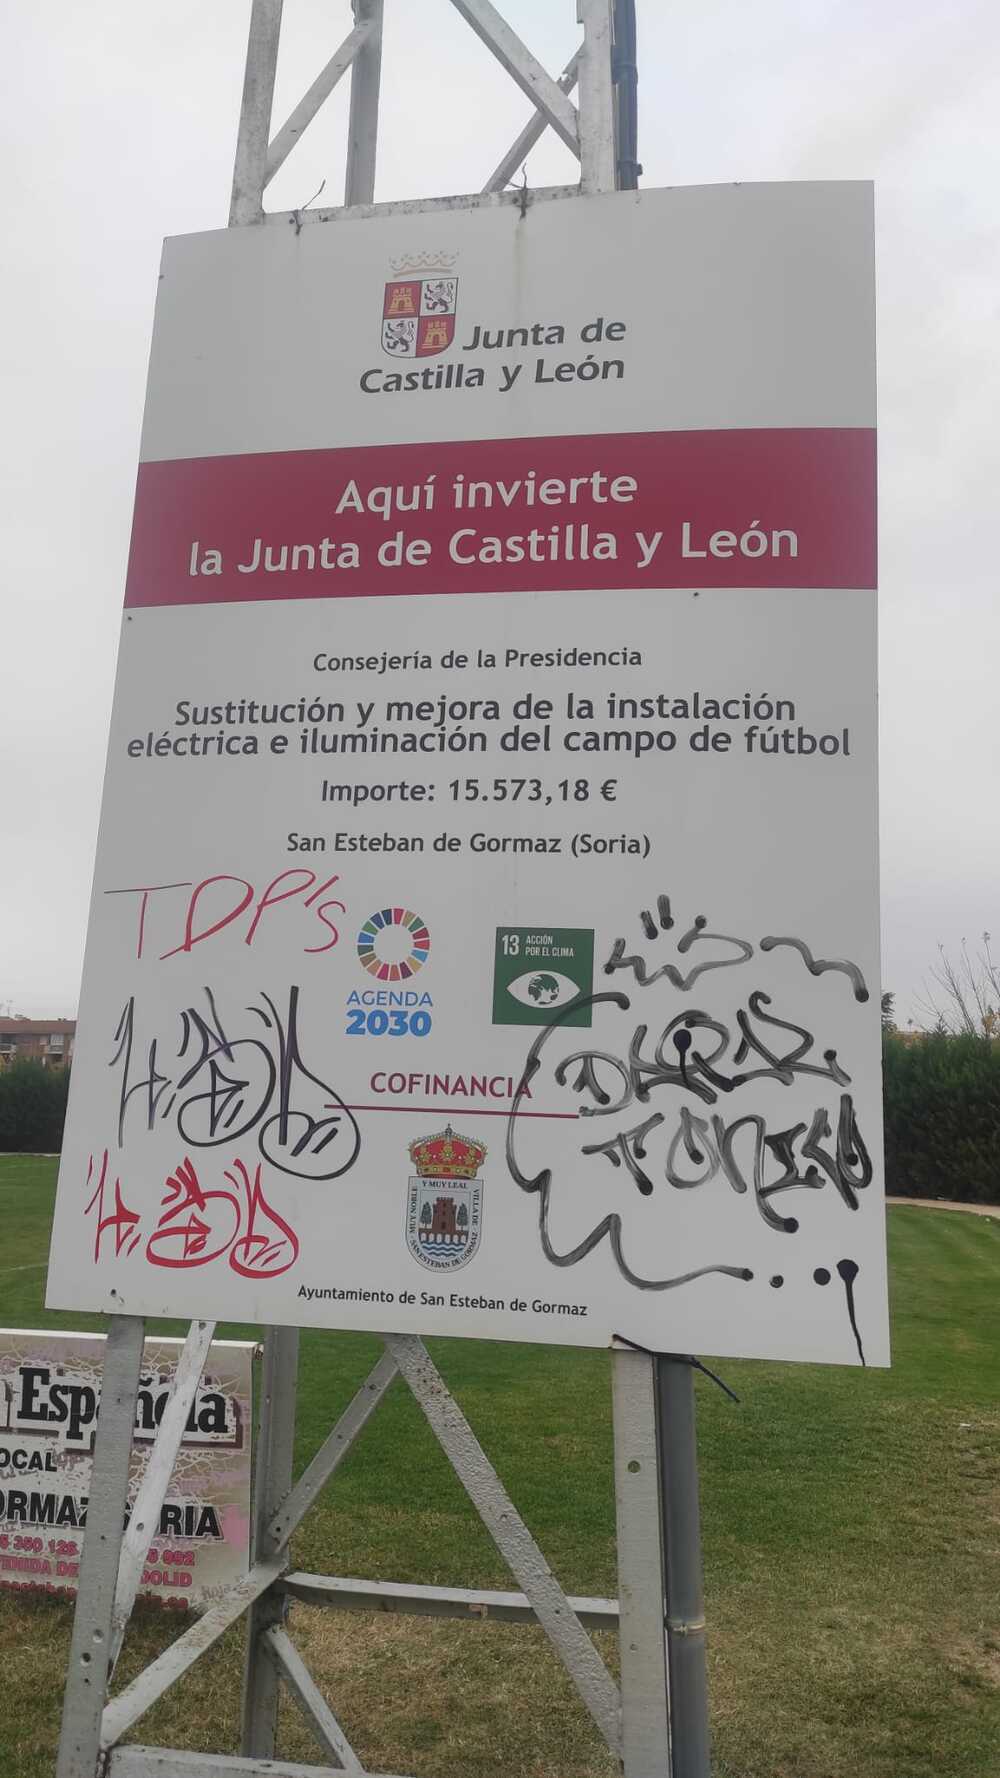 Actos de vandalismo en instalaciones deportivas de San Esteban